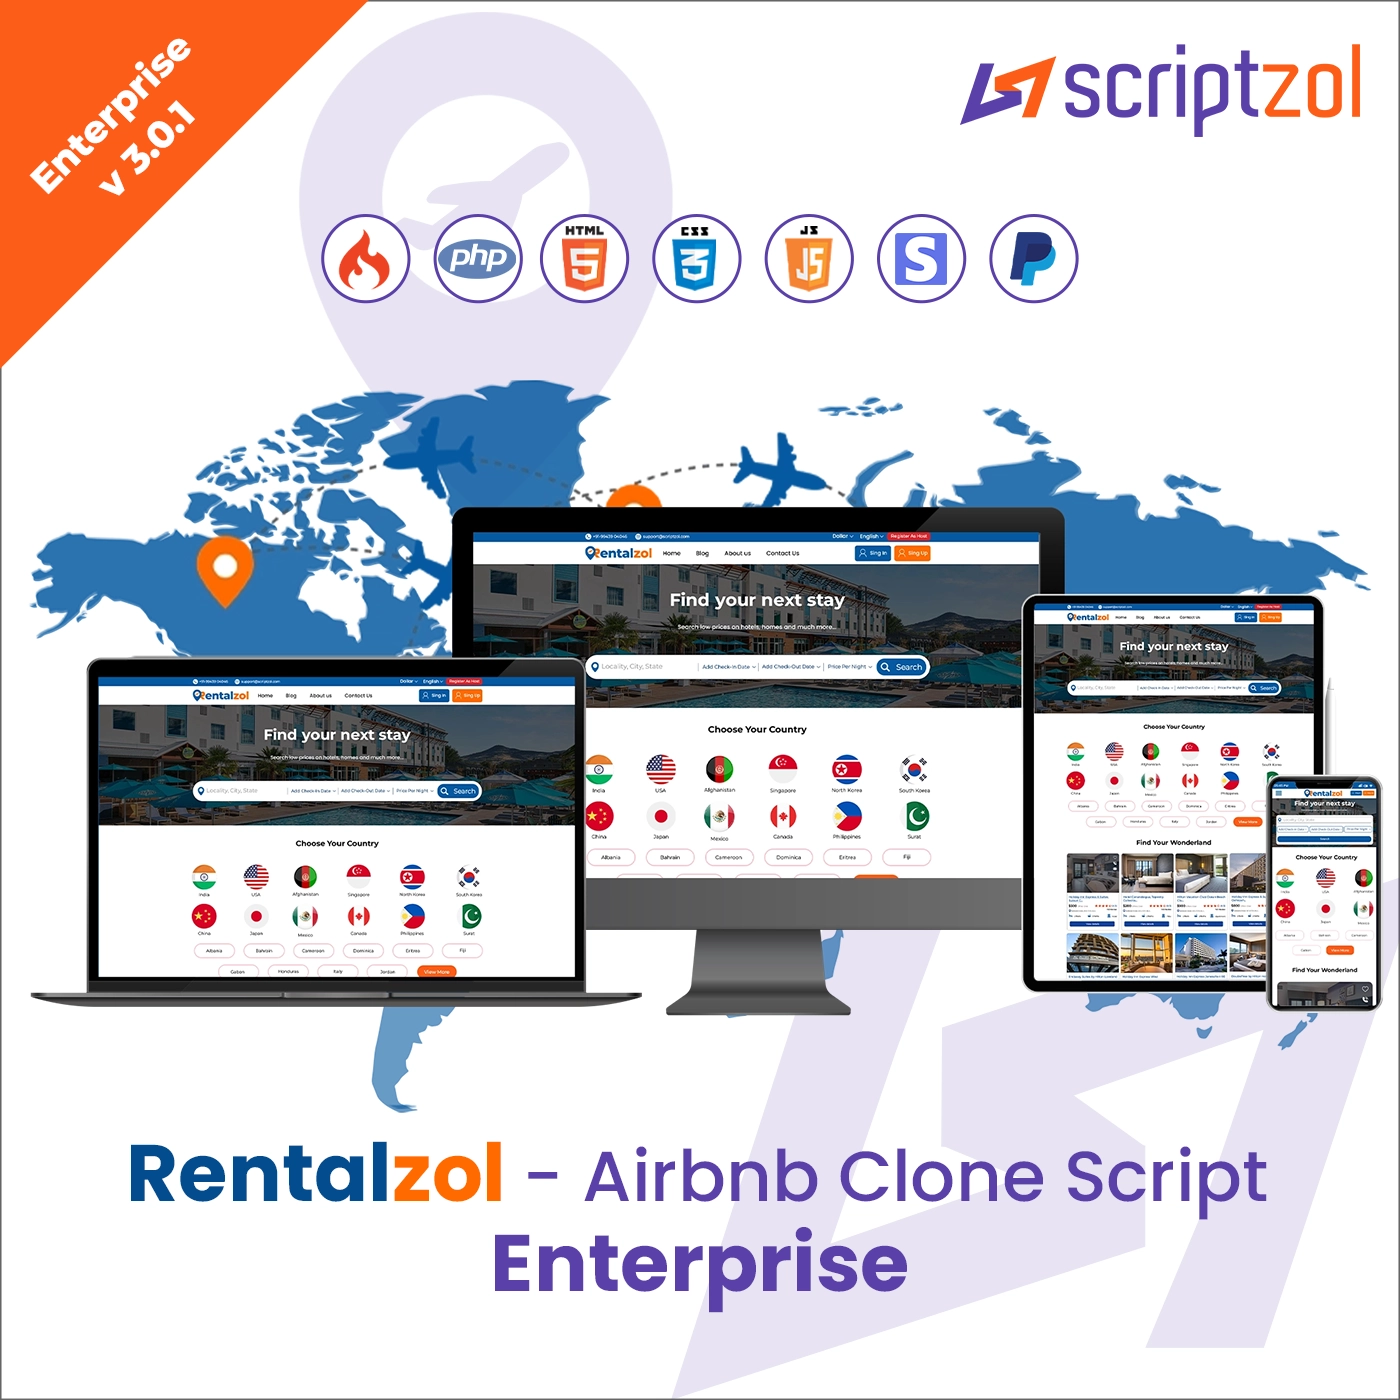 Rentalzol - Airbnb Clone Script Enterprise